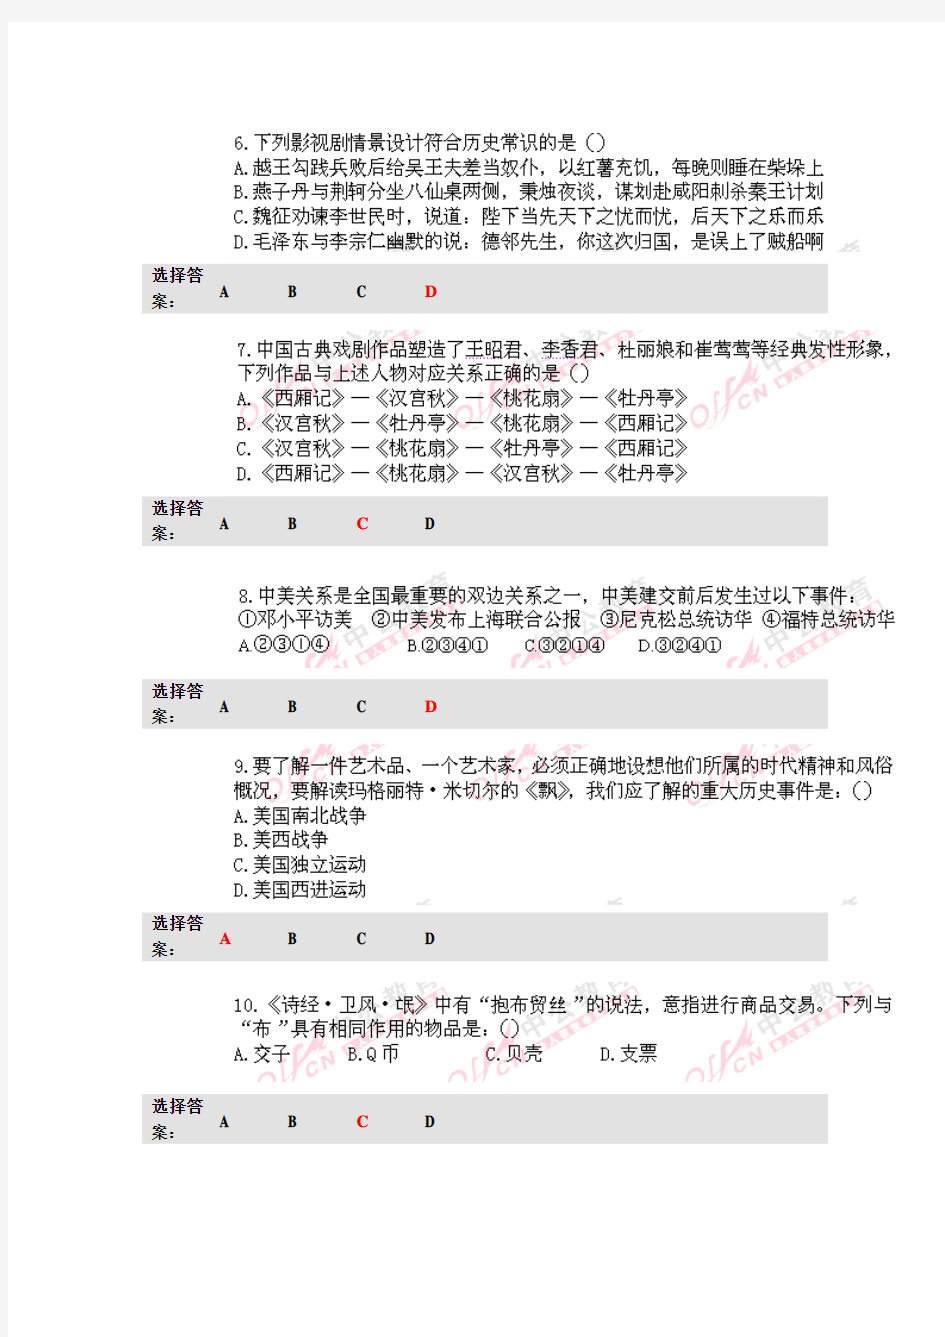 2012年湖南省公务员考试行测真题及答案